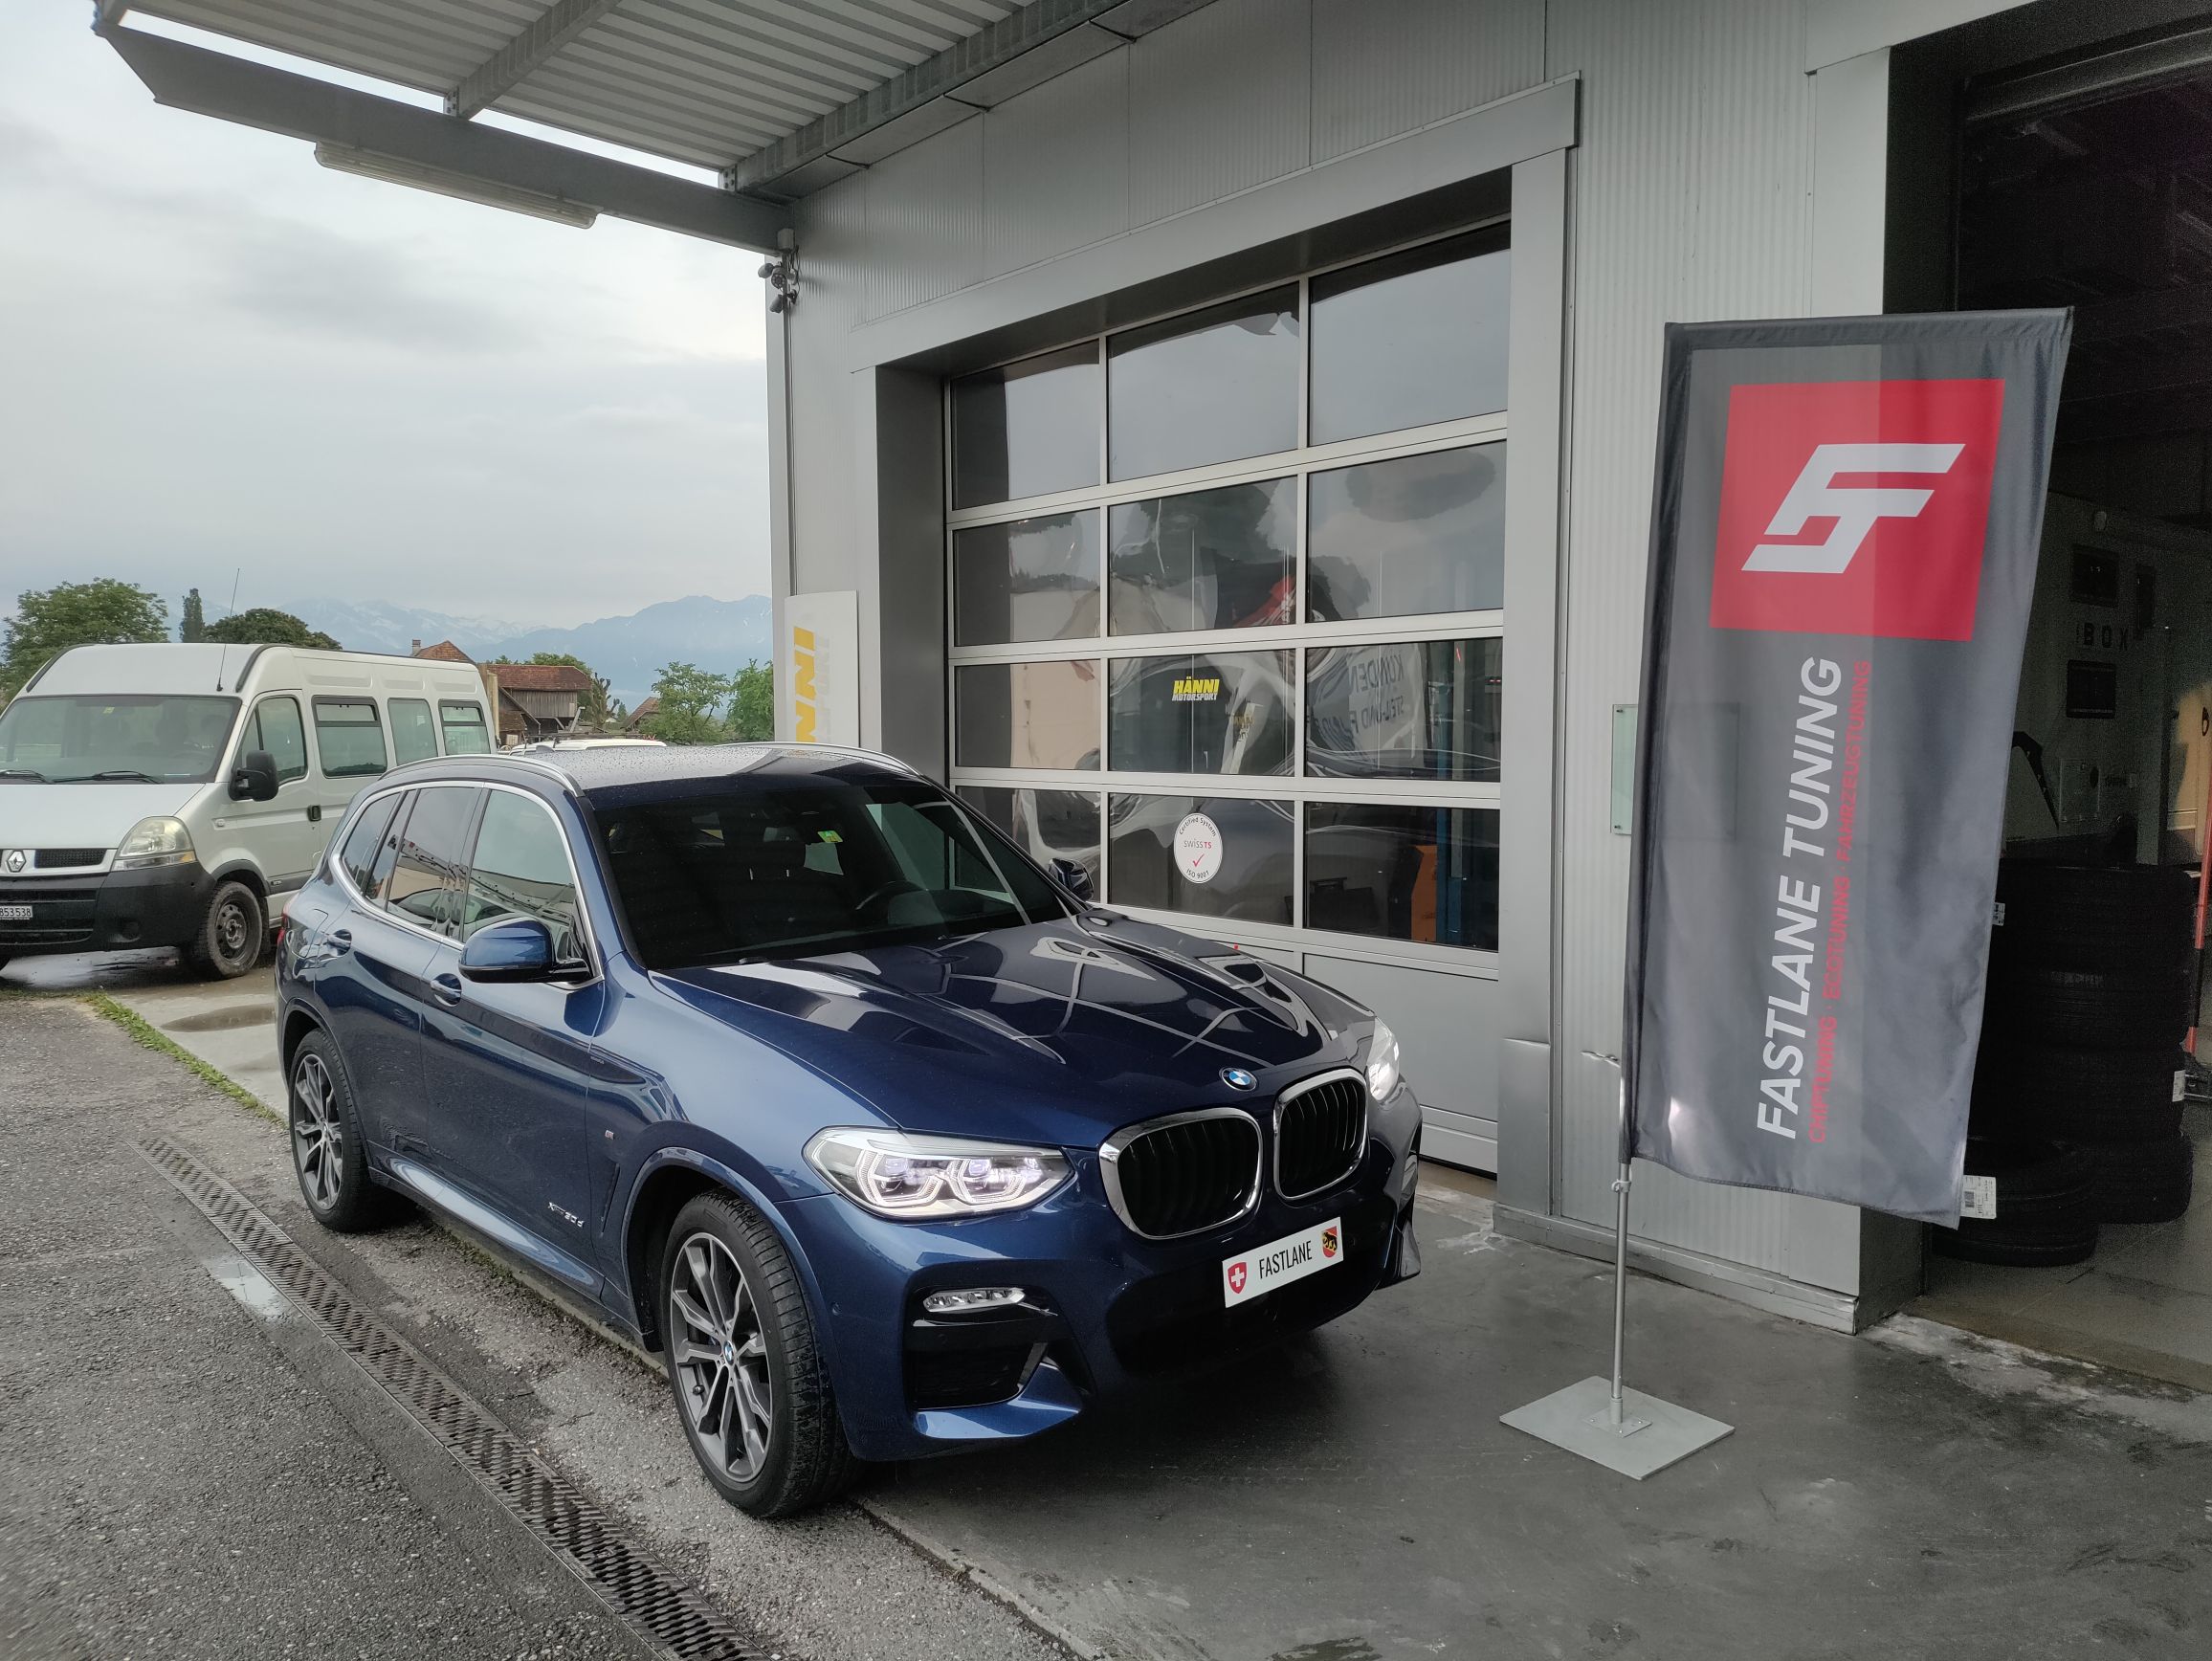 Ein dunkelblauer BMW X3 30d 2.0 Diesel steht vor der Garage neben der Fastlane Tuning Schweiz Flagge